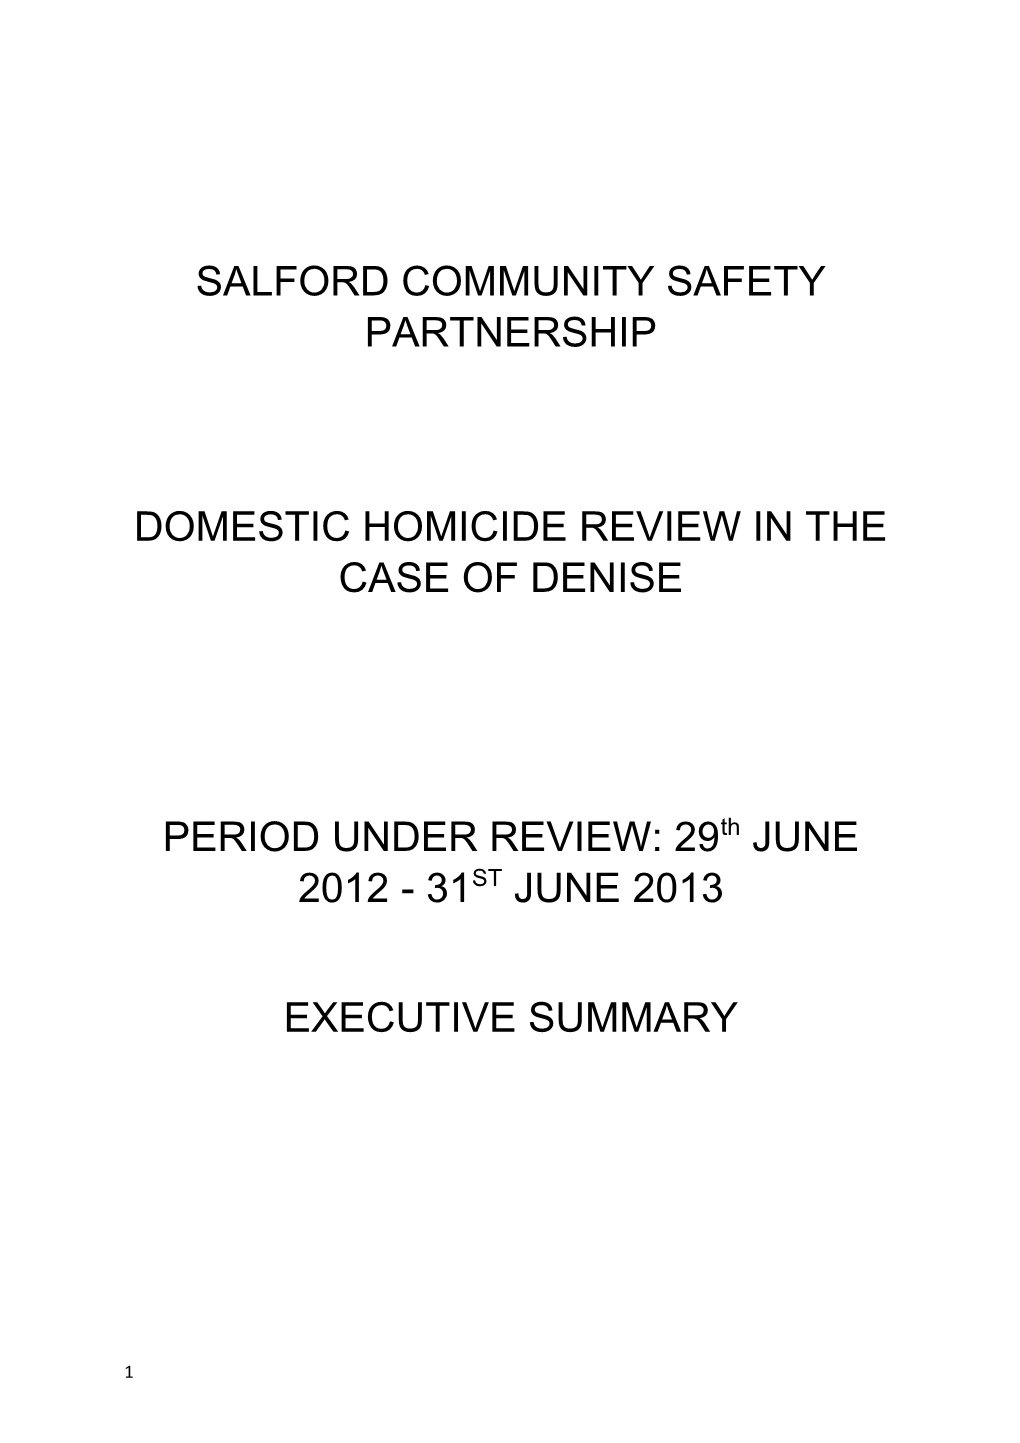 Salford Community Safety Partnership